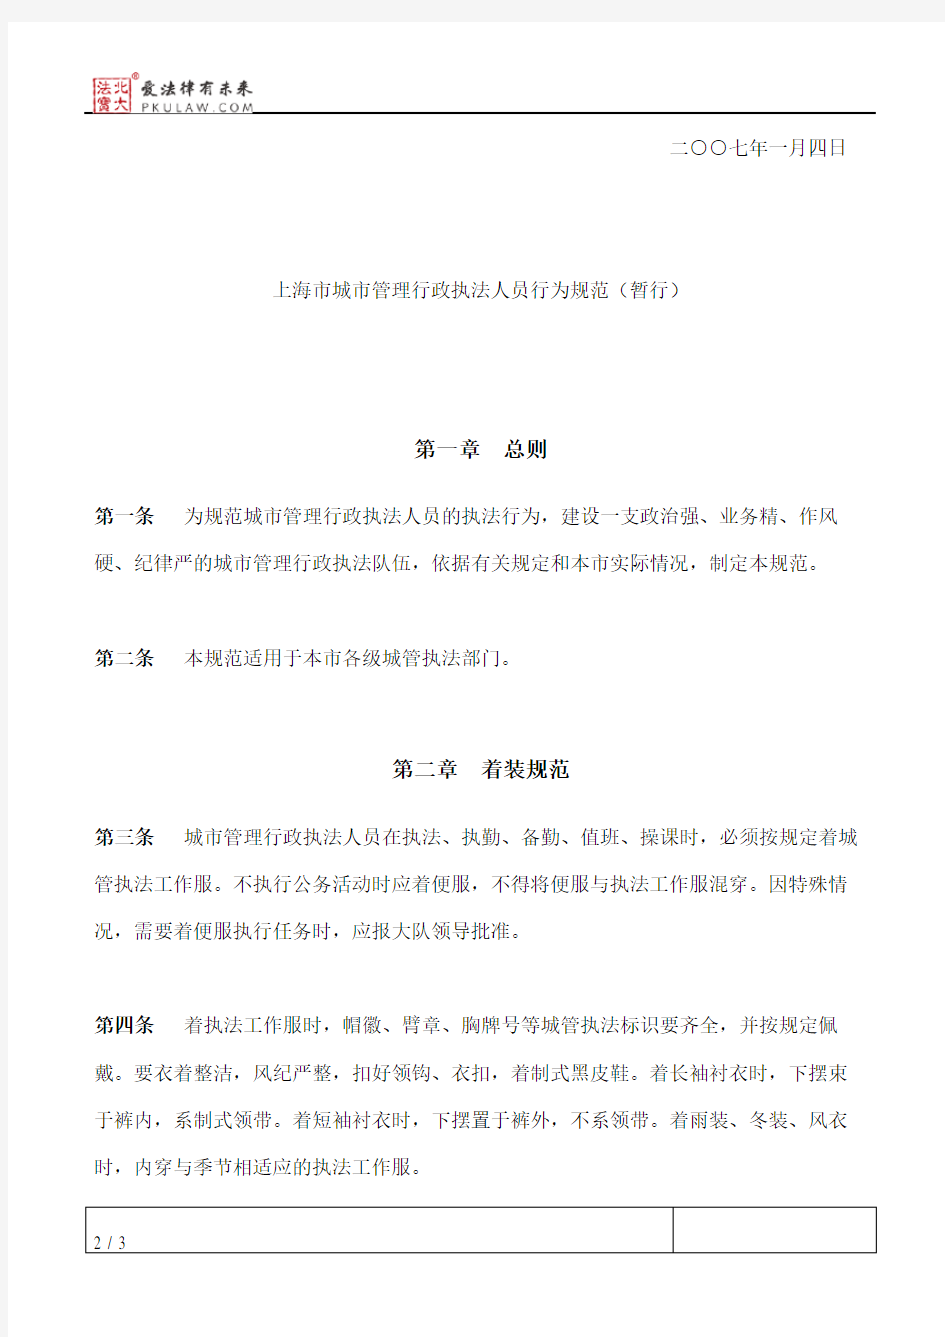 上海市城管执法局关于印发《上海市城市管理行政执法人员行为规范